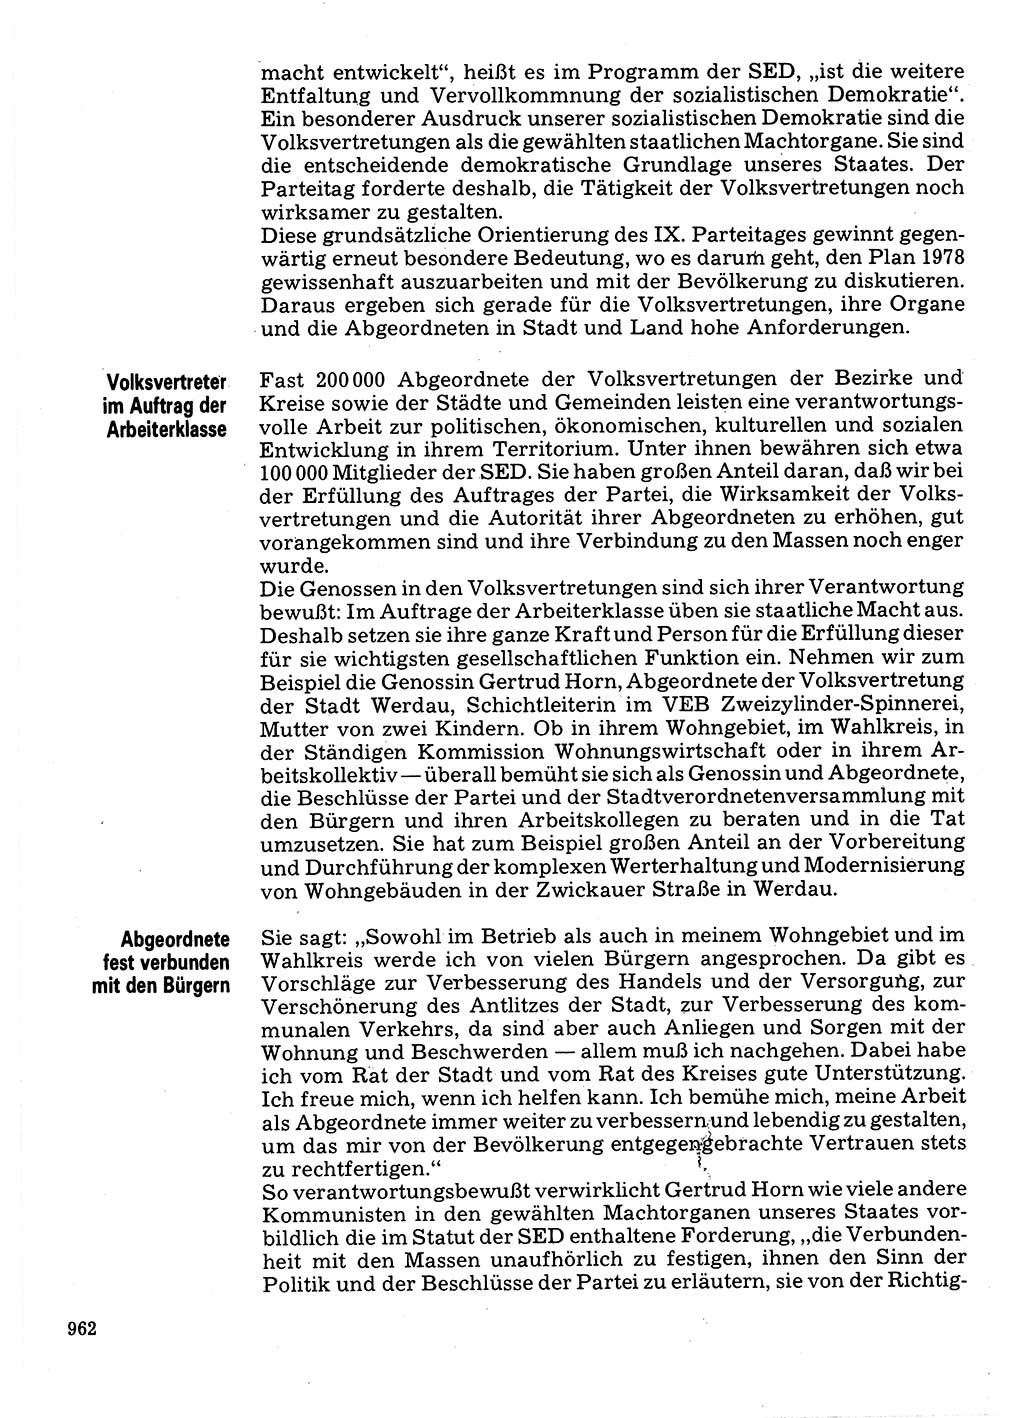 Neuer Weg (NW), Organ des Zentralkomitees (ZK) der SED (Sozialistische Einheitspartei Deutschlands) für Fragen des Parteilebens, 32. Jahrgang [Deutsche Demokratische Republik (DDR)] 1977, Seite 962 (NW ZK SED DDR 1977, S. 962)